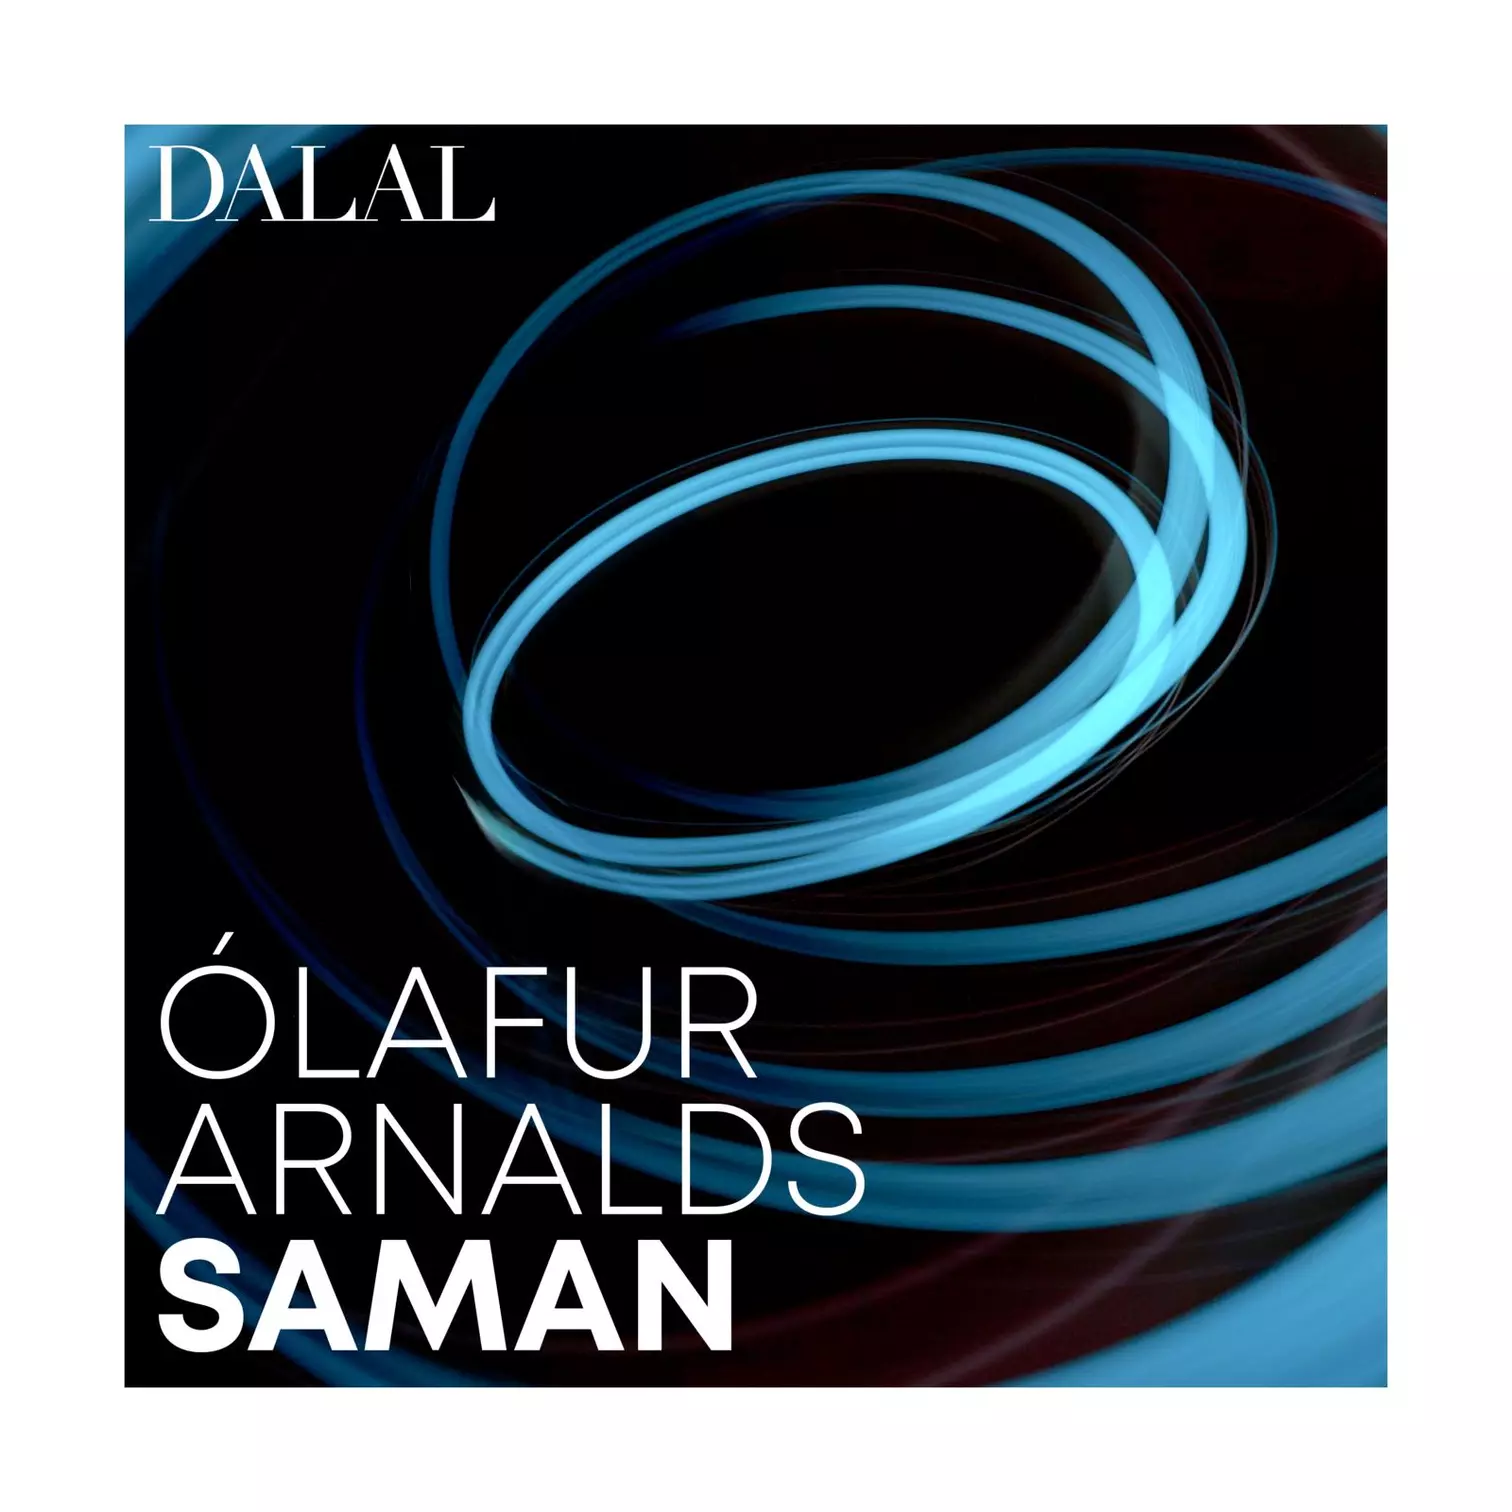 Olafur Arnalds Saman